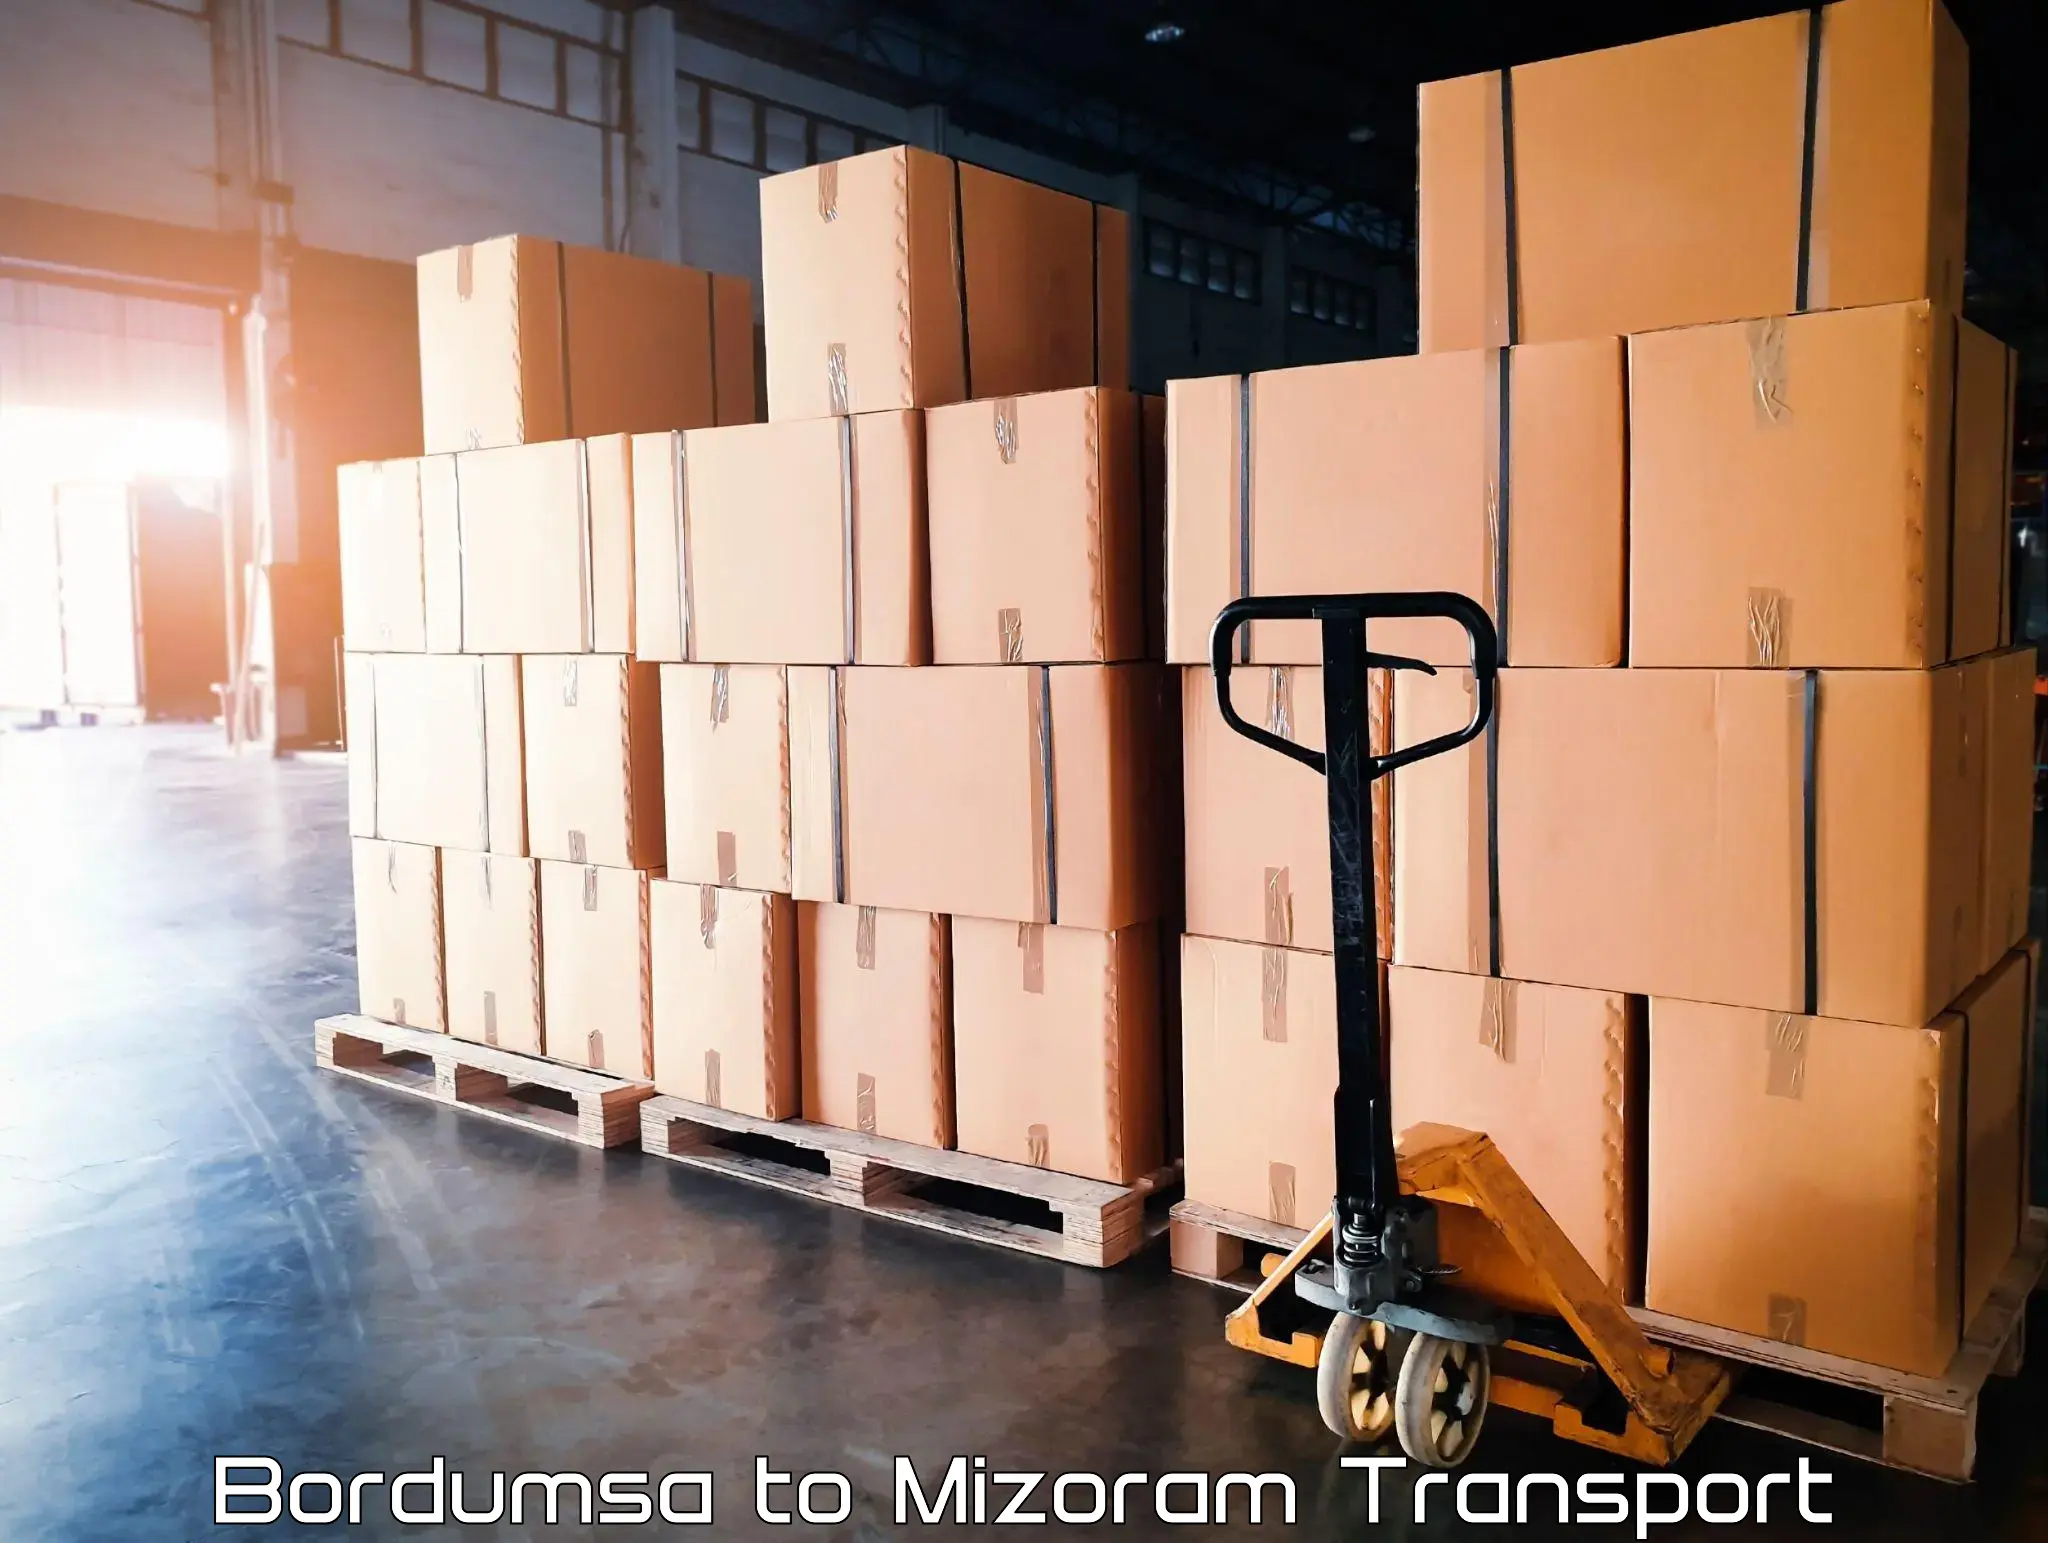 Transport in sharing Bordumsa to Mizoram